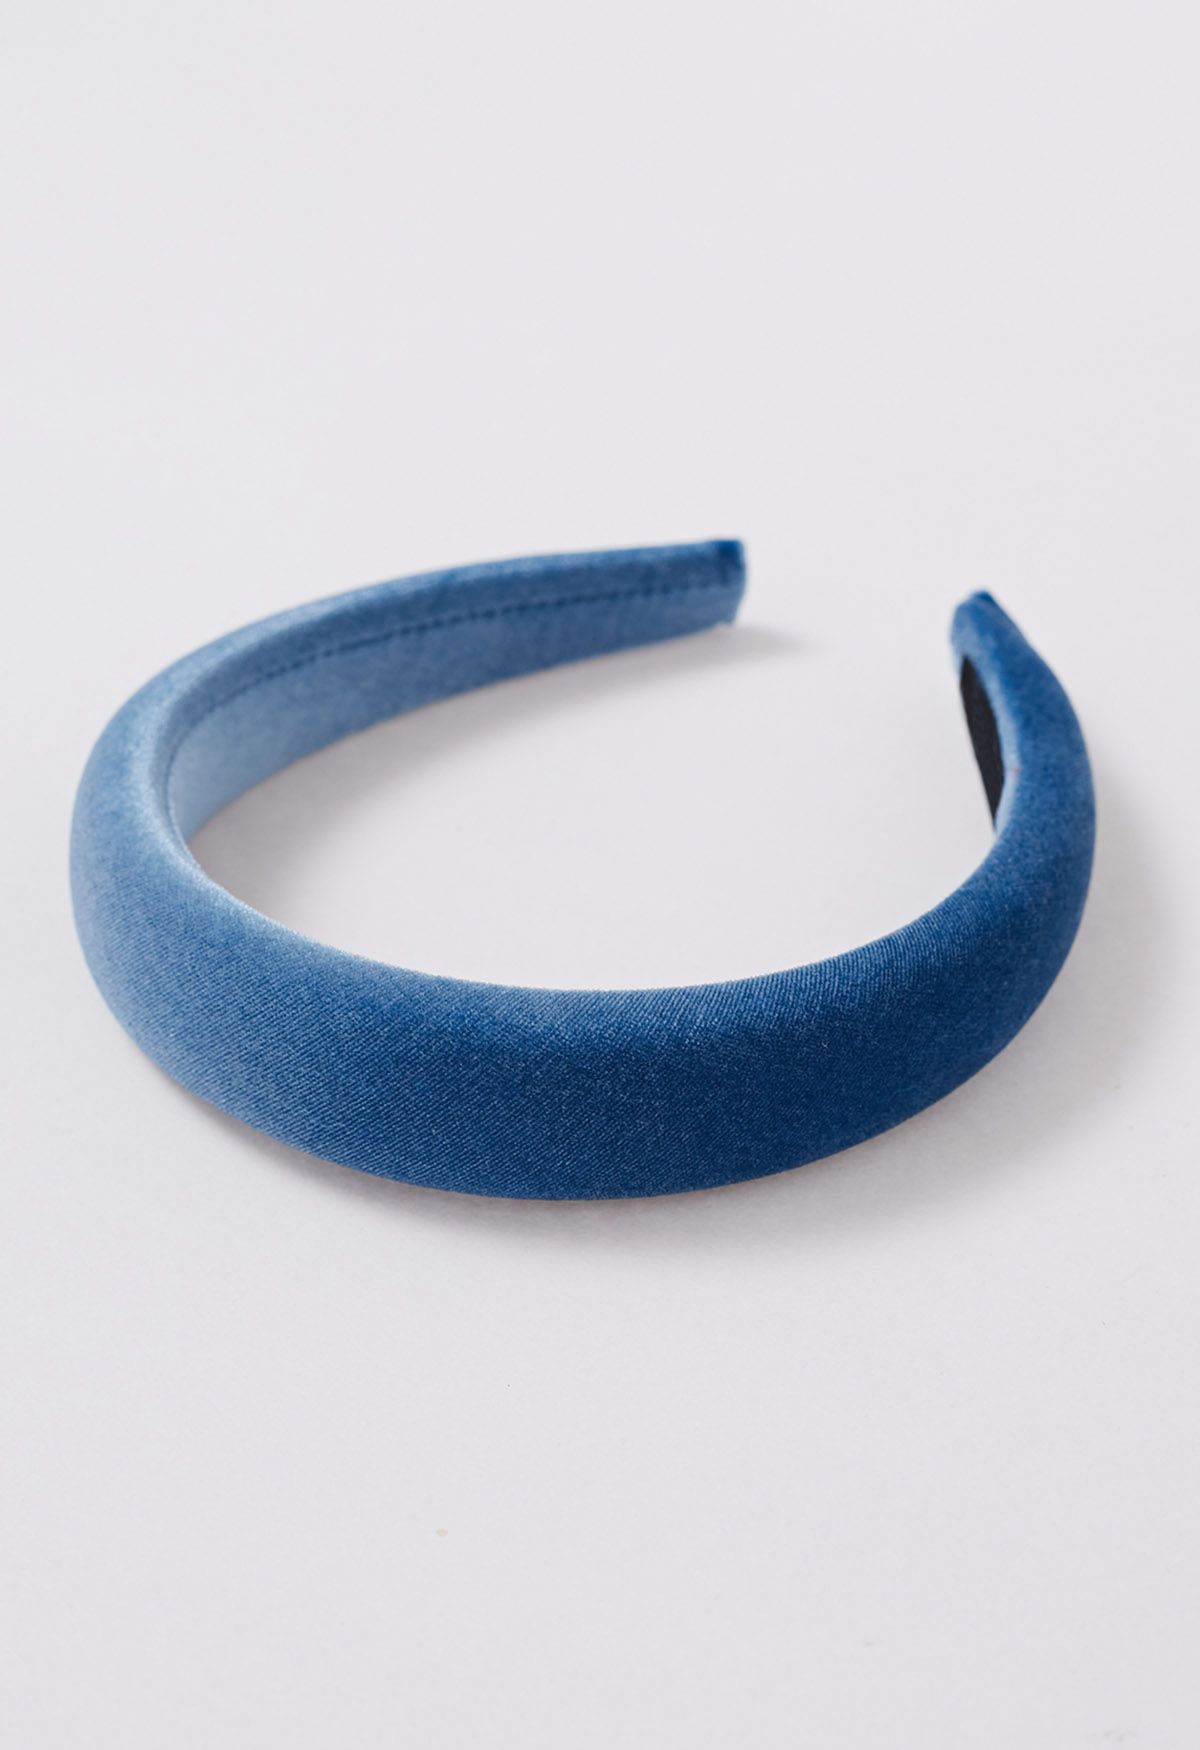 Sleeky Velvet Sponge Headband in Blue